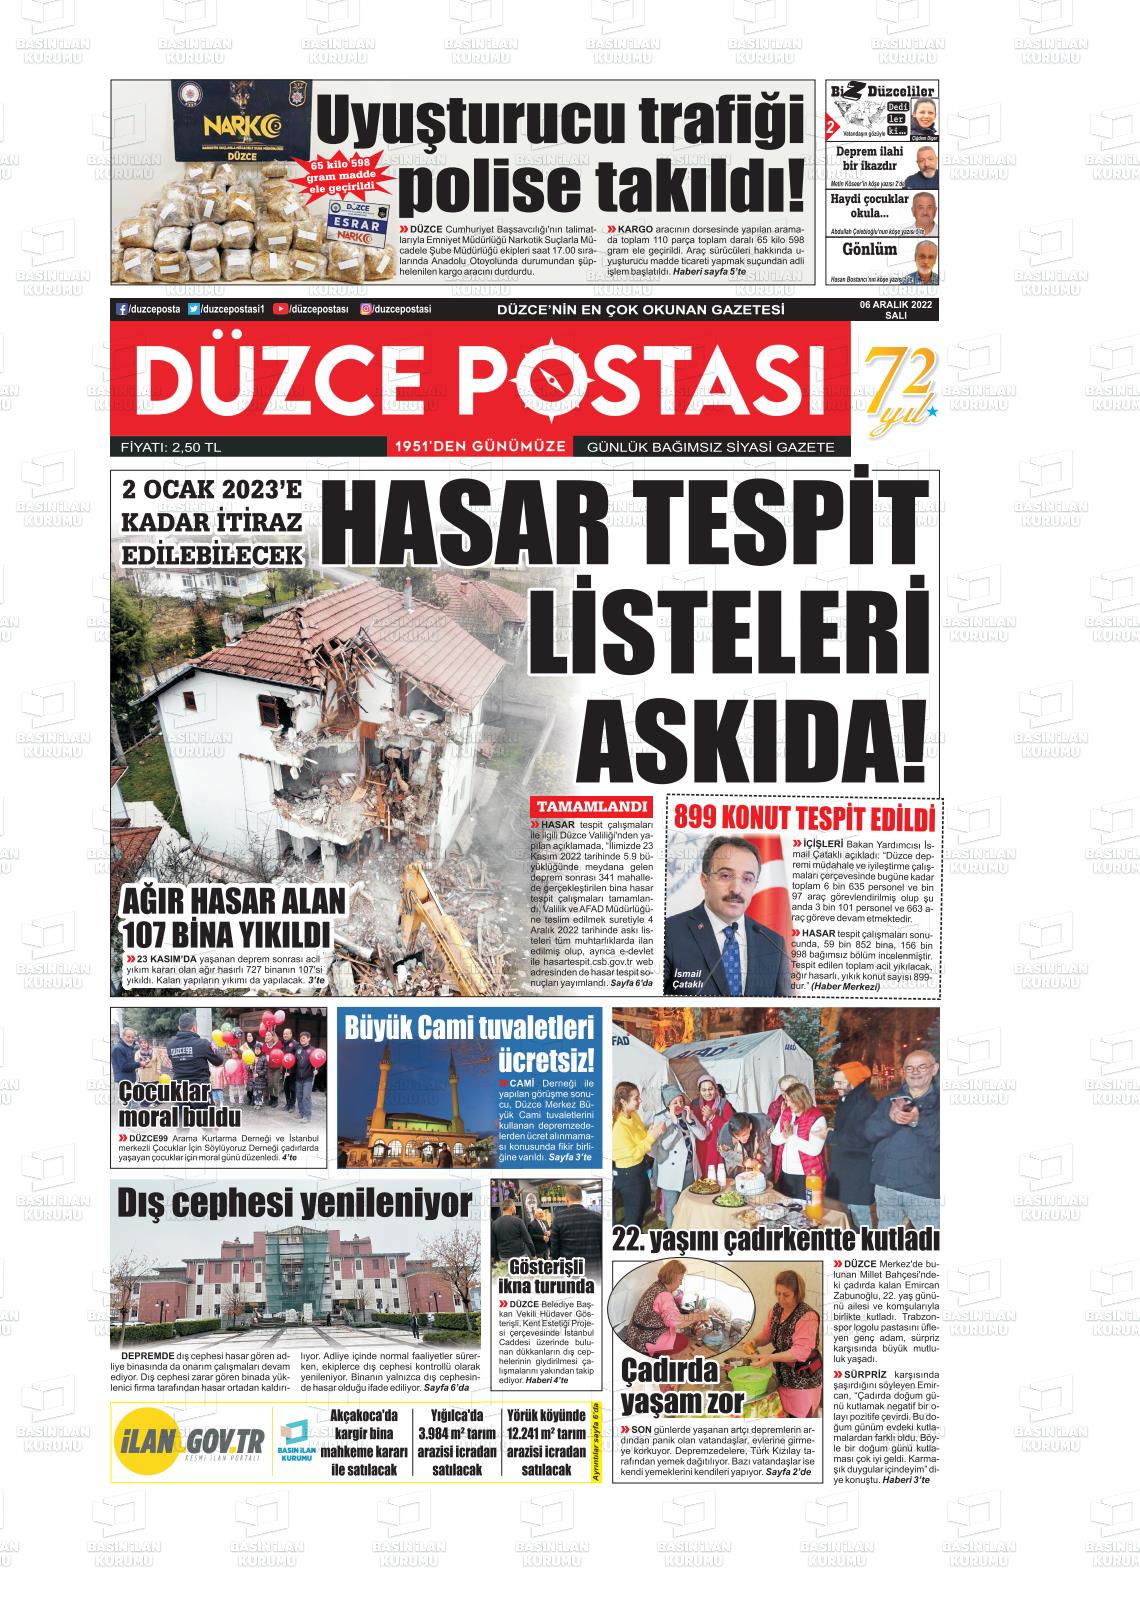 06 Aralık 2022 Düzce Postası Gazete Manşeti